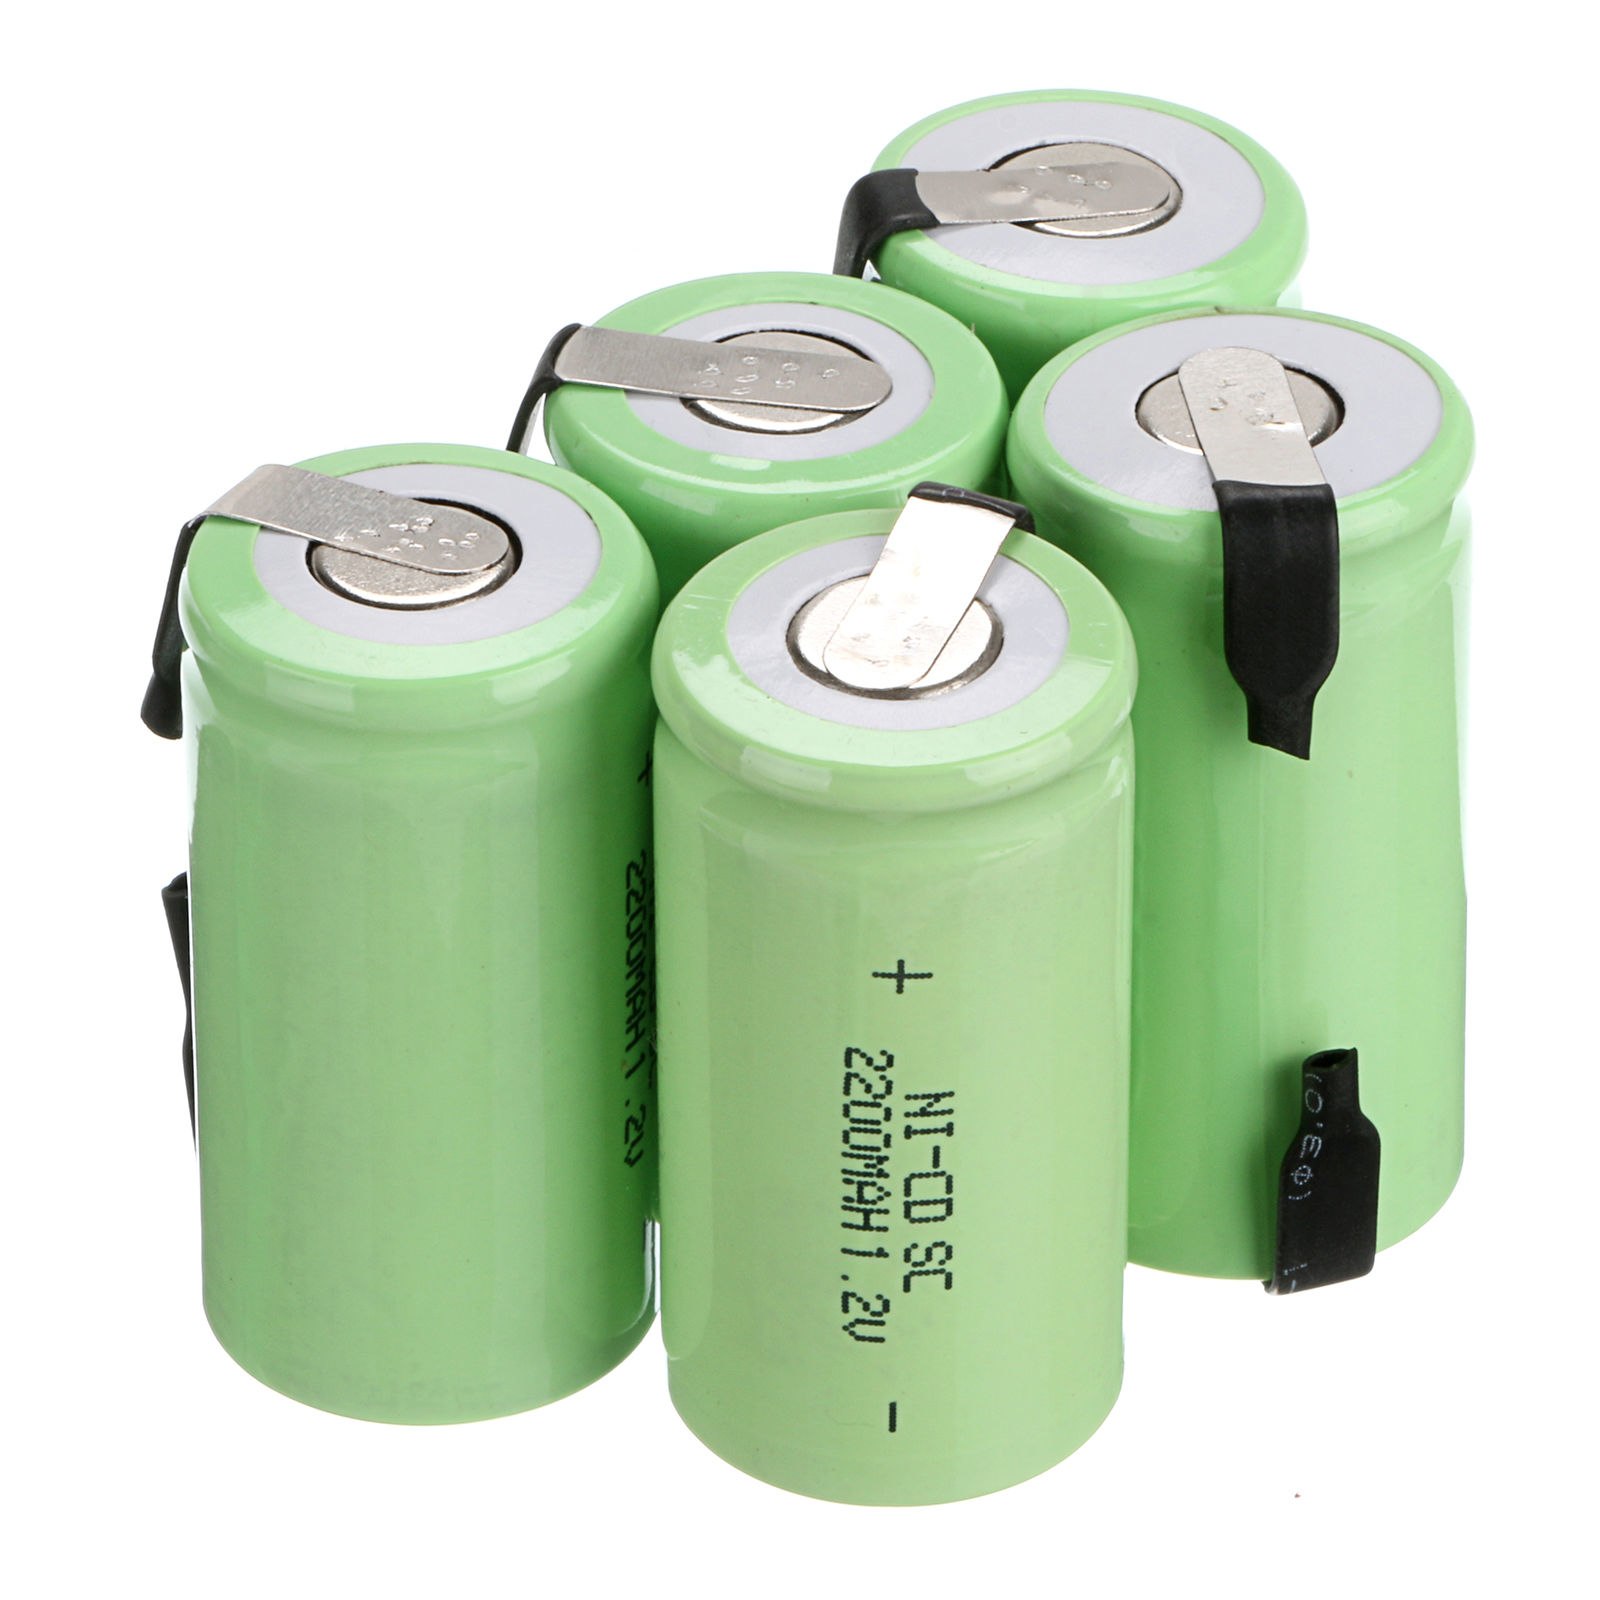 C batteries. Аккумуляторы никель-кадмиевые 1.2. Аккумуляторная батарея 1.2 v 18000mah. NICD батареи 1.2 v. Никель кадмиевые ni CD аккумуляторы.